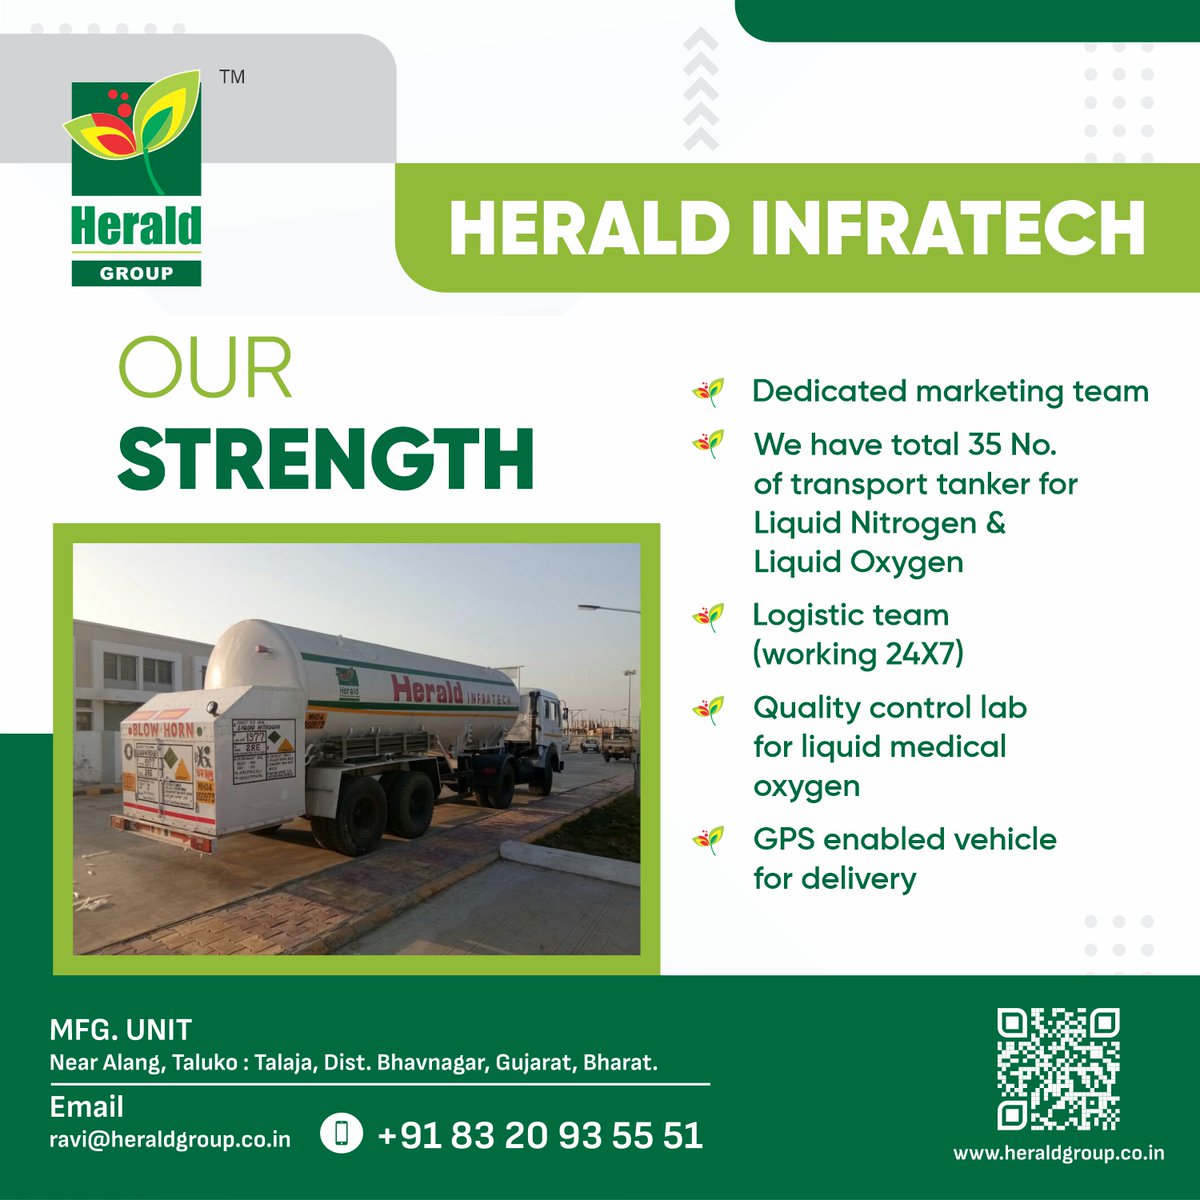 - We have total 35 No. of transport tanker for Liquid Nitrogen & Liquid Oxygen

#heraldinfratech
#heraldgroup #groupofcompanies